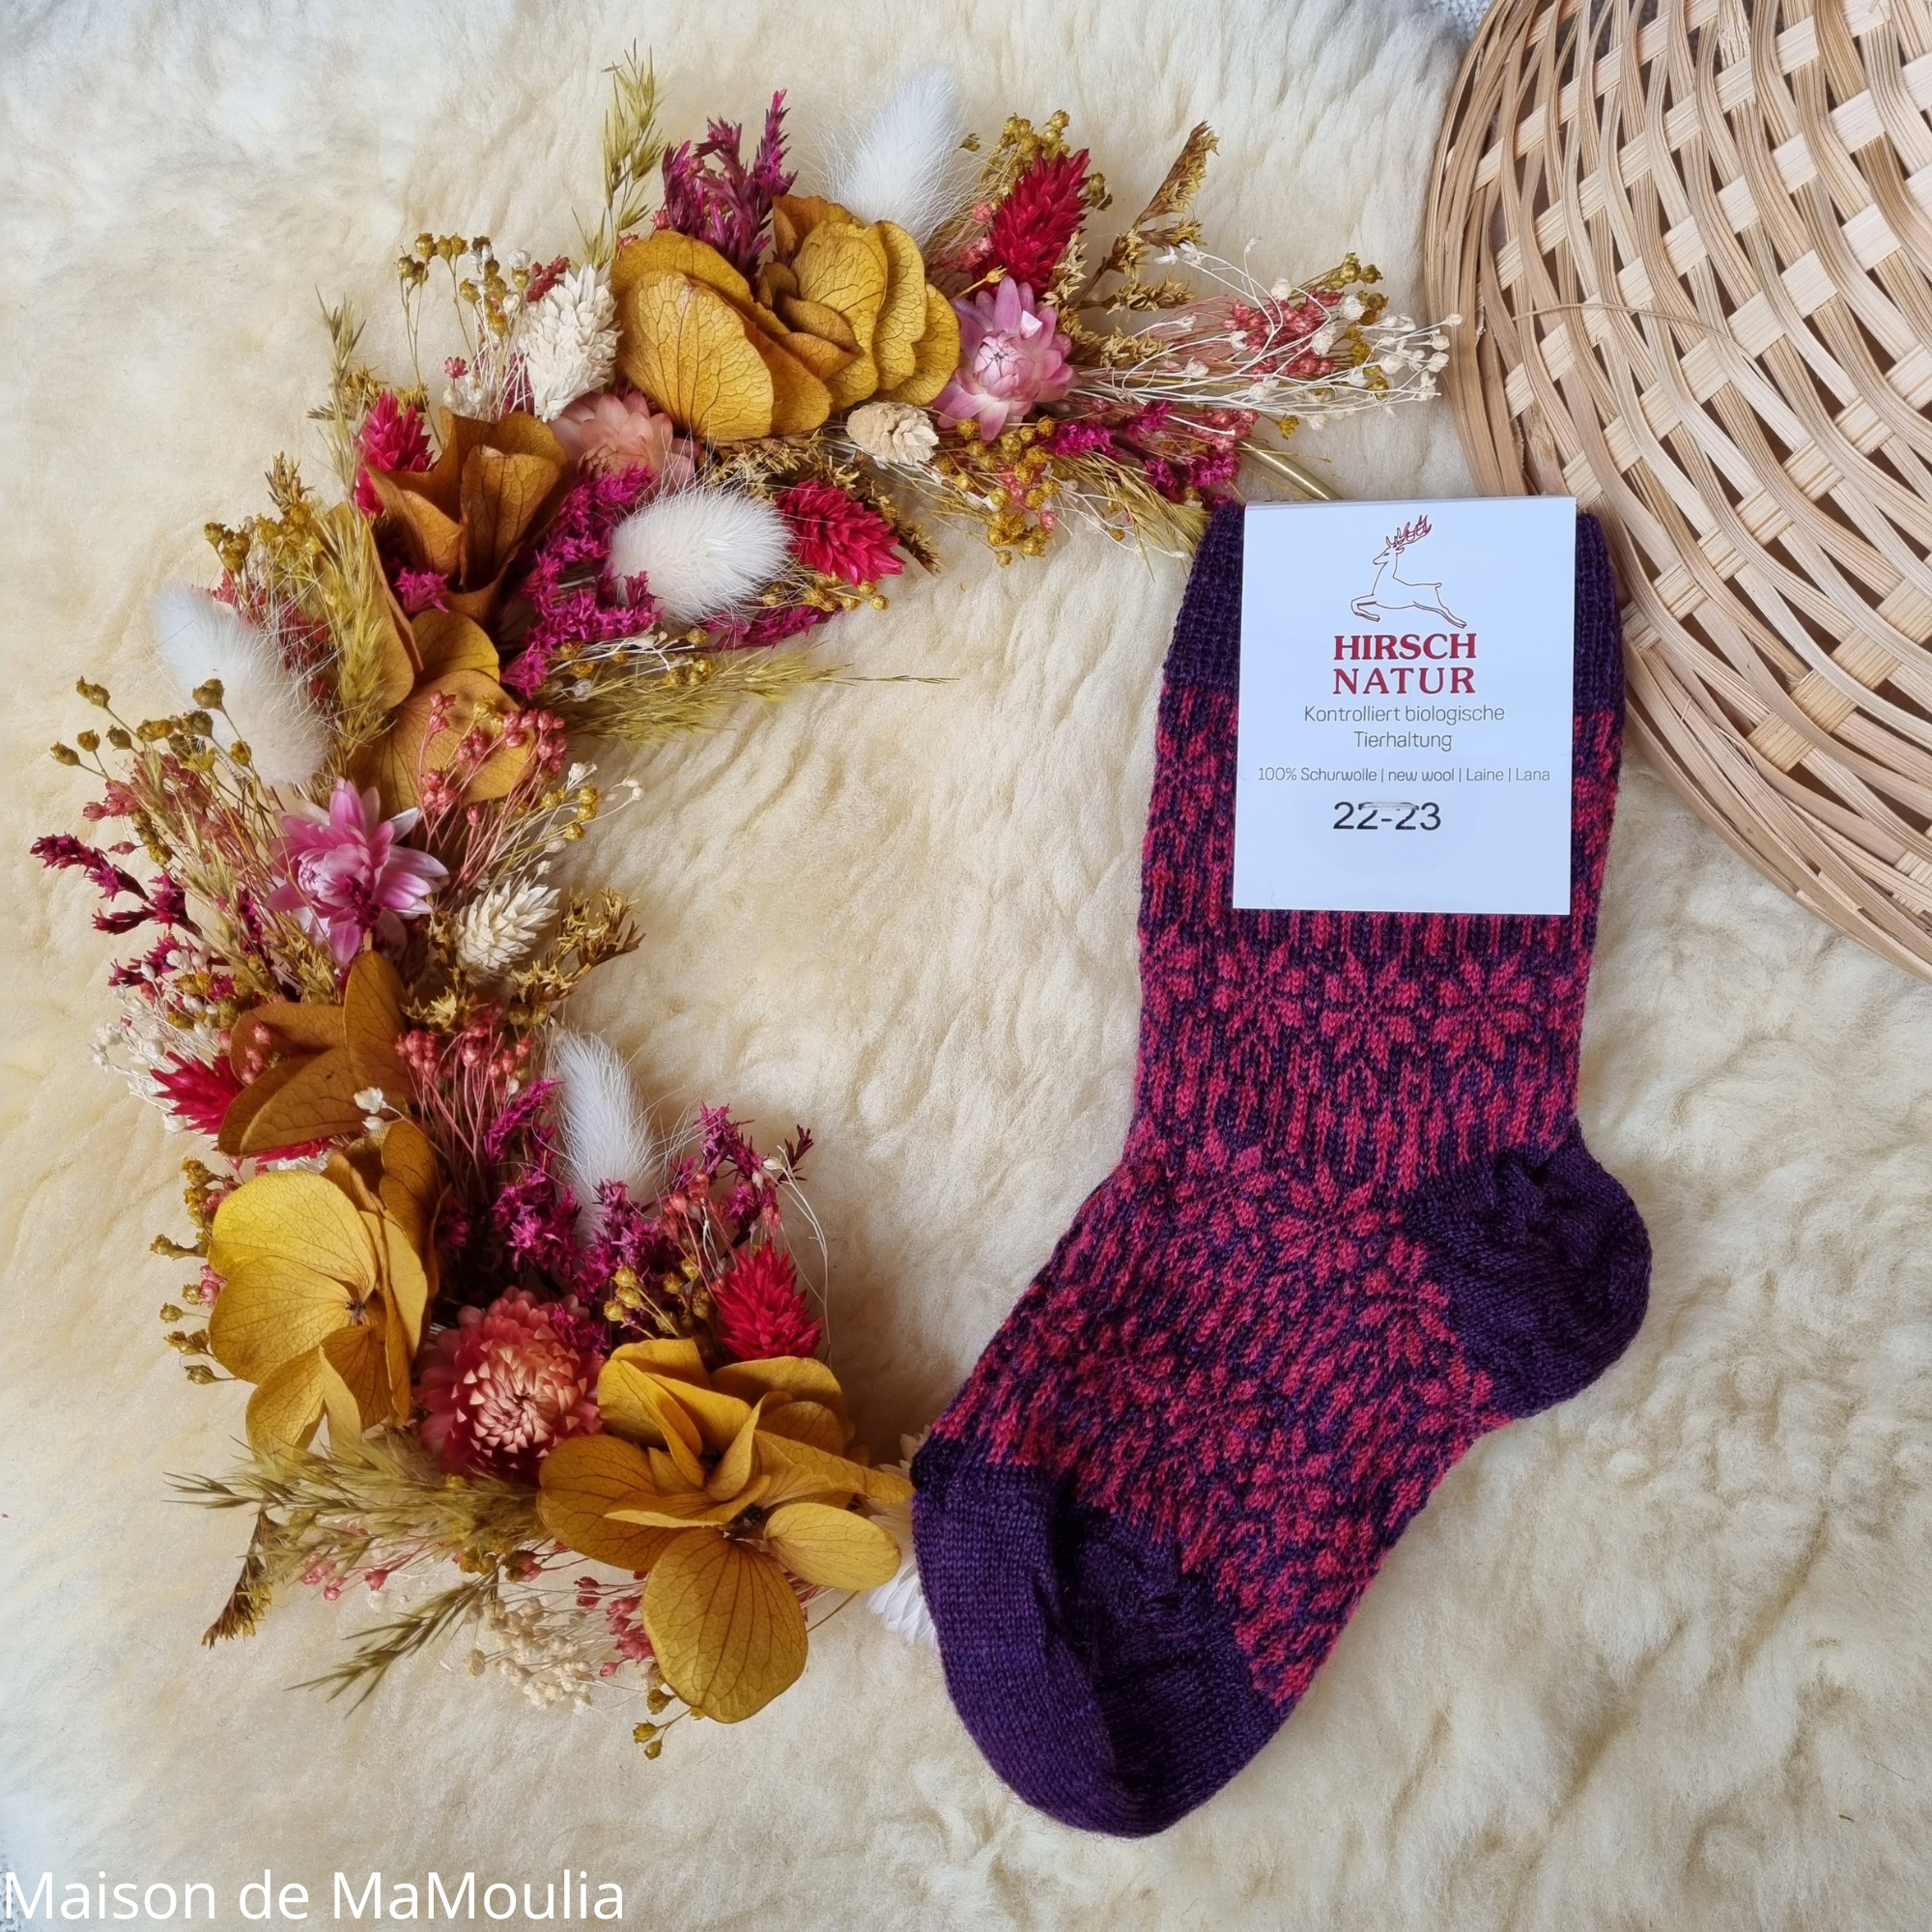 056-chaussettes-fines-chaudes-pure-laine-bio-ecologique-hirsch-natur-bebe-enfant-maison-de-mamoulia-rose-prune